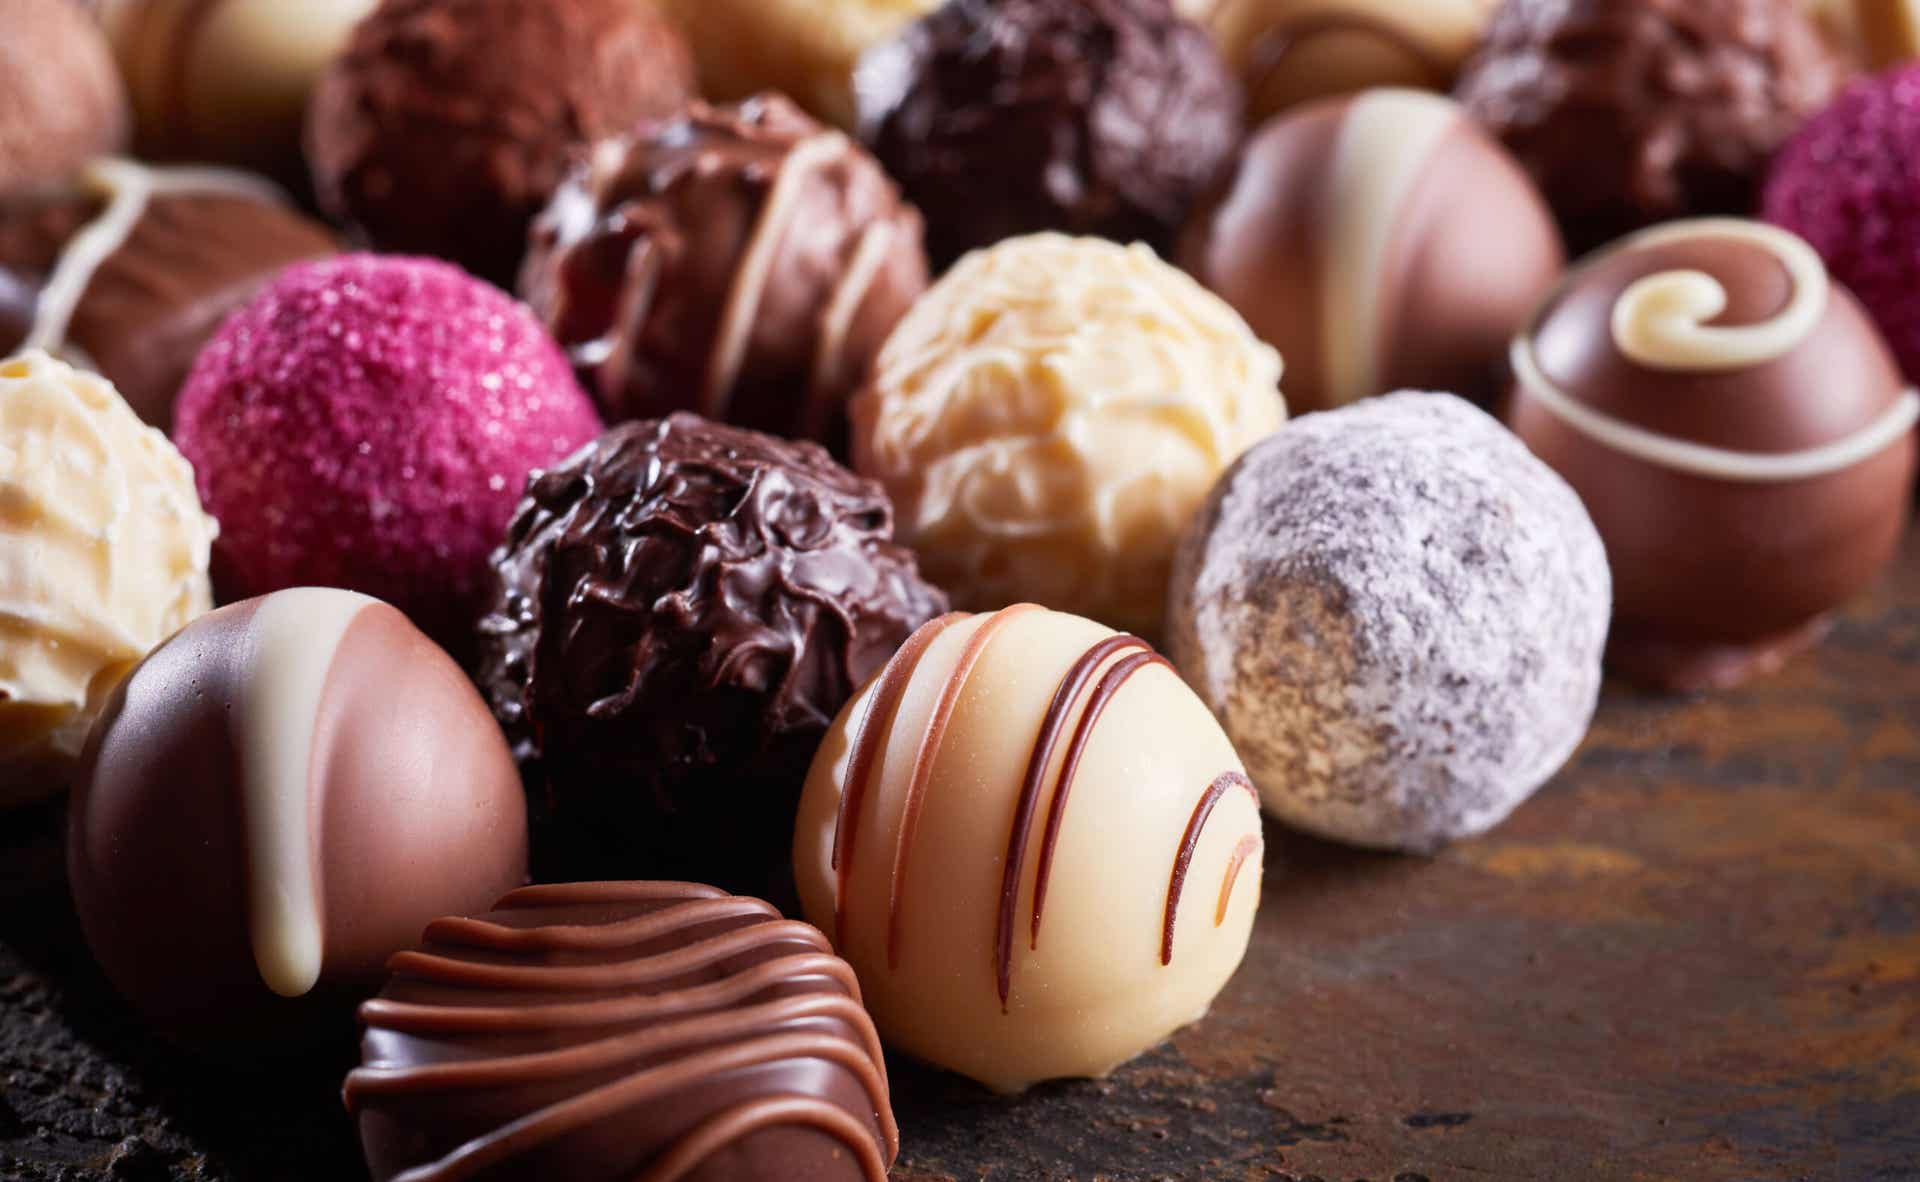 Entre los alimentos prohibidos colon irritable están los chocolates.